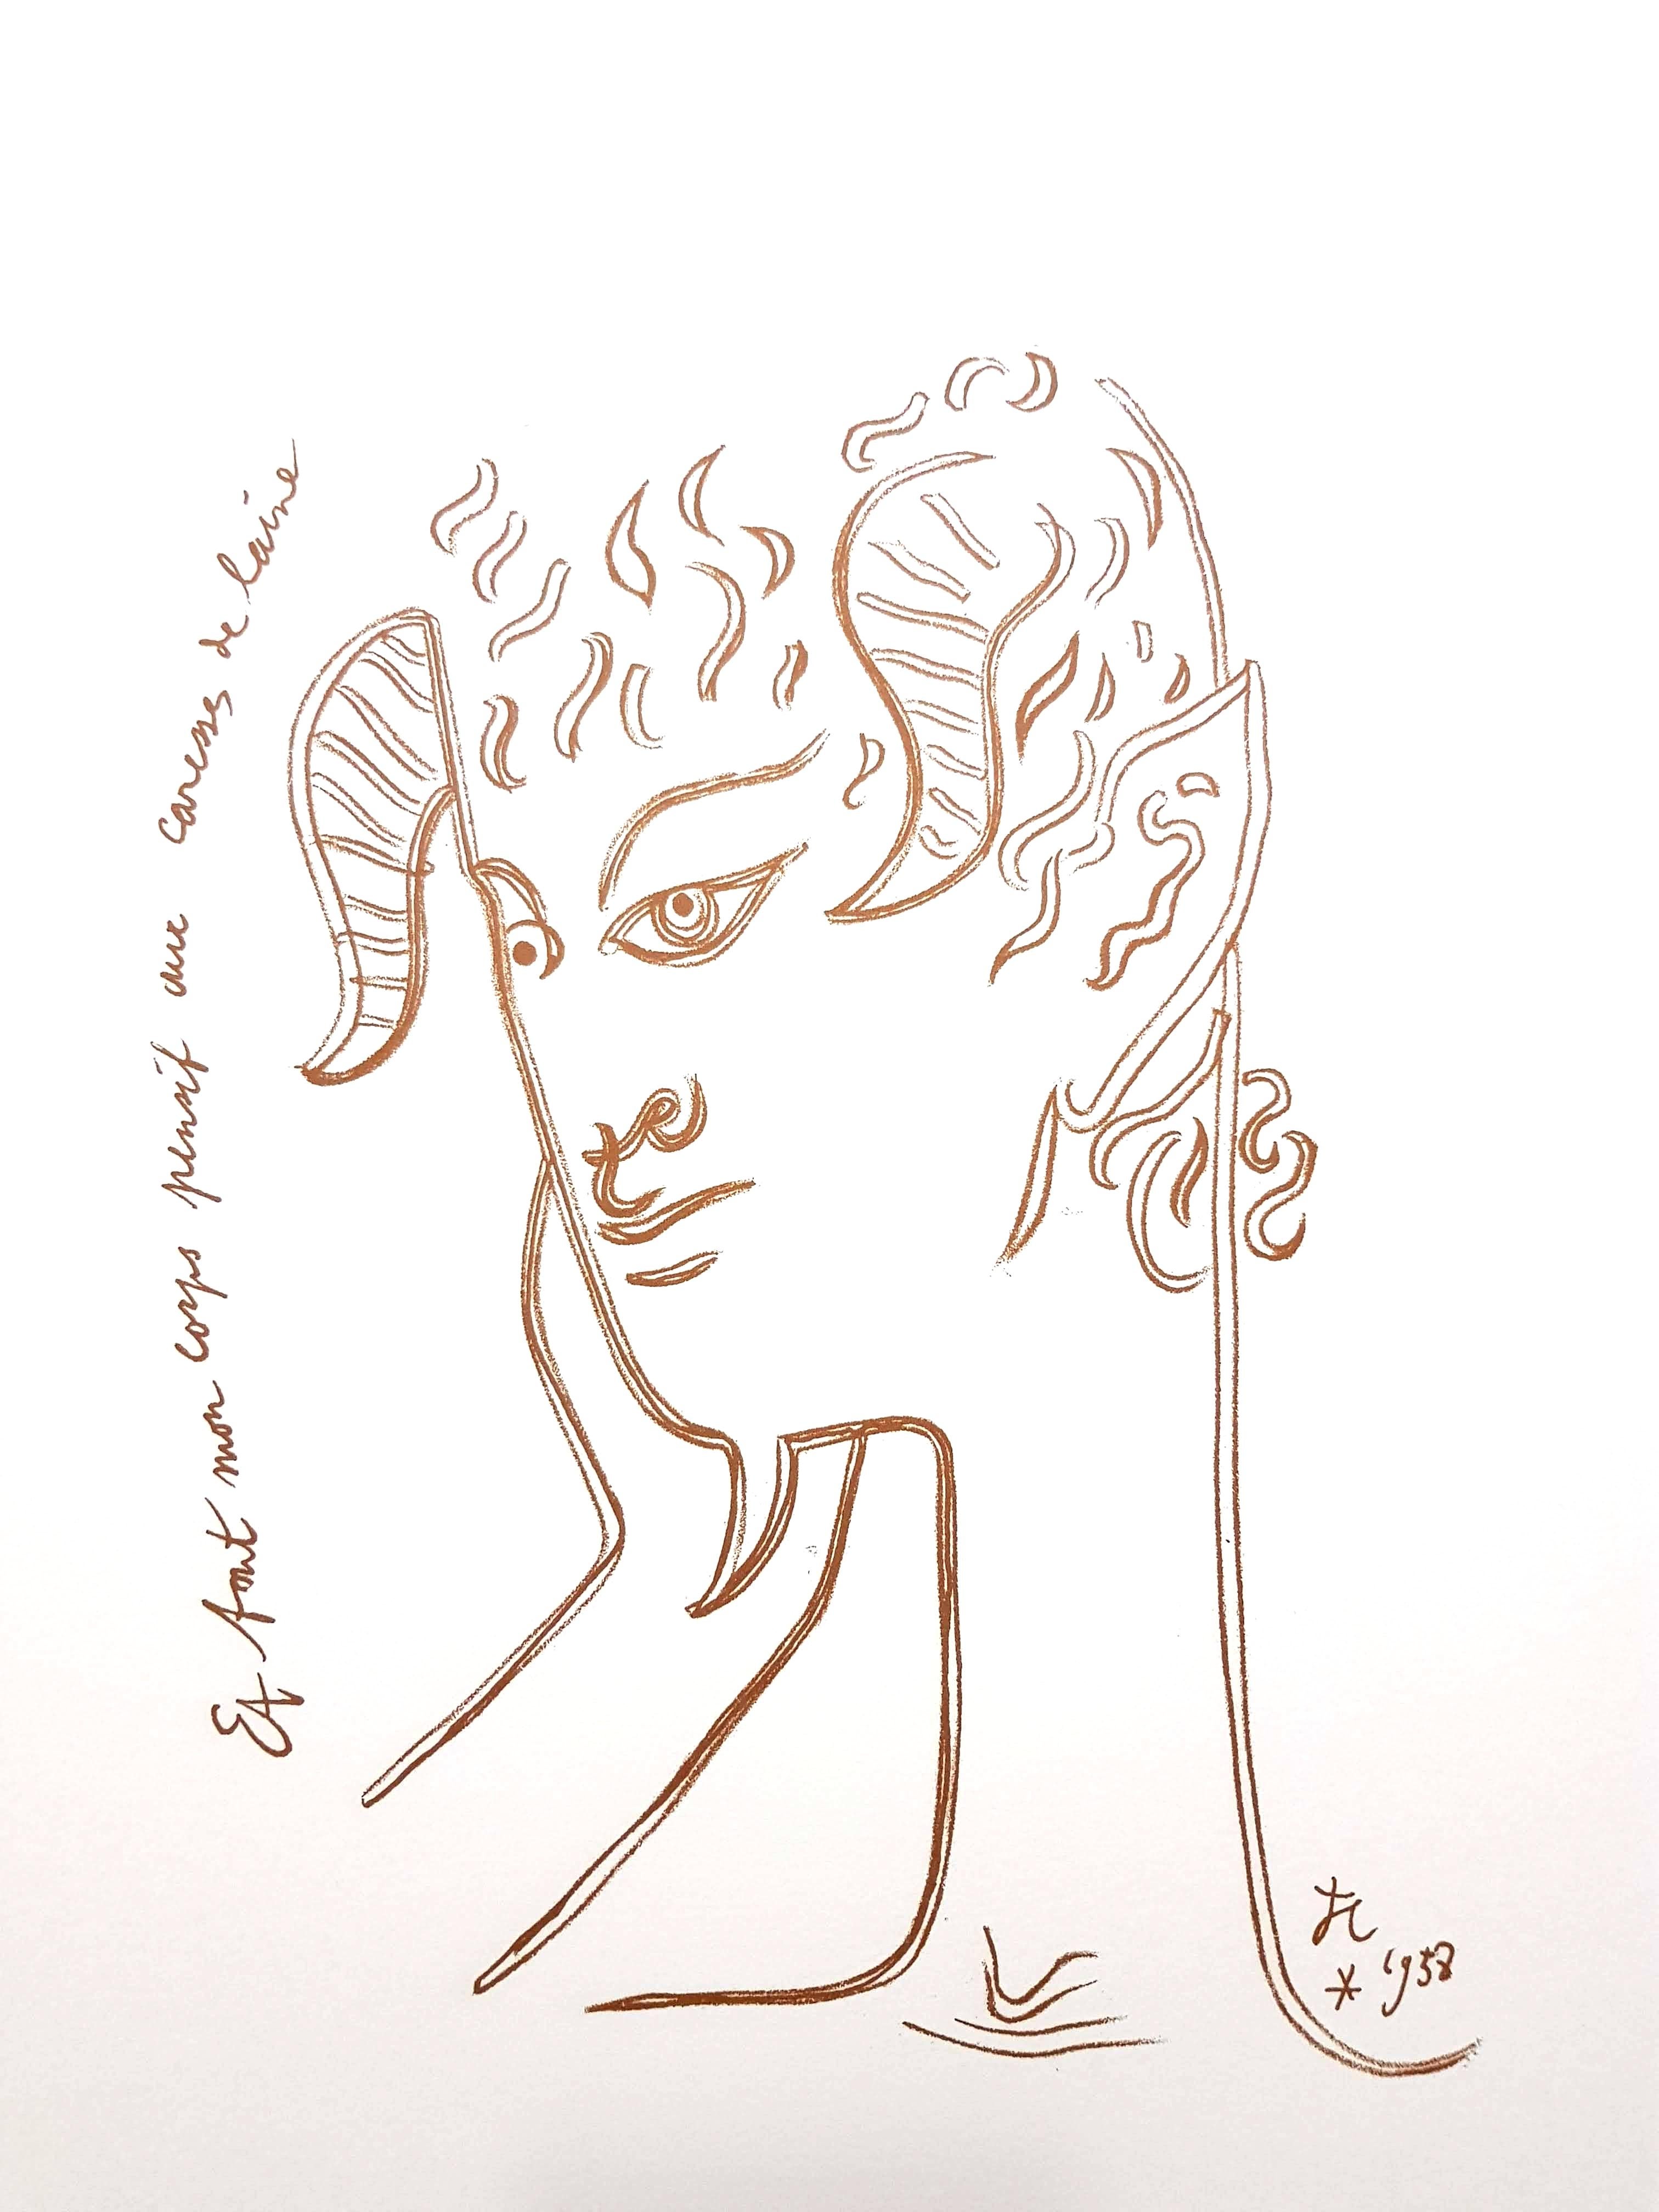 Original-Lithographie von Jean Cocteau
Titel: Überlegungen
In der Platte signiert
Abmessungen: 32 x 25,5 cm
Auflage: 200
1959
Verlag: Bibliophiles Du Palais
Unnummeriert wie ausgegeben